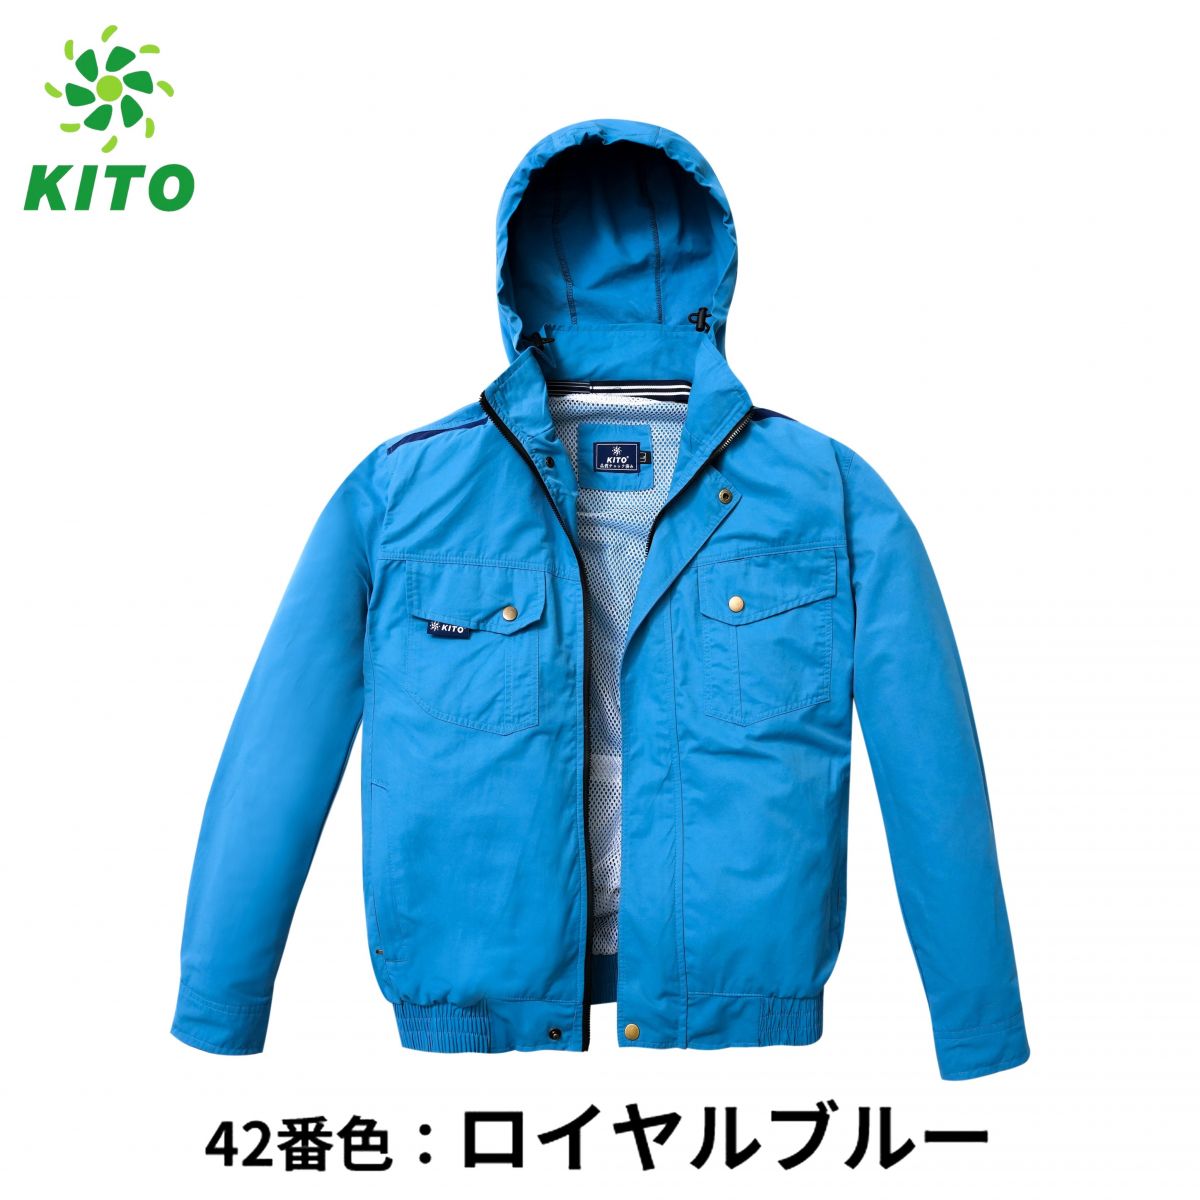 Mua áo điều hòa Nhật Bản giá tốt tại KITO